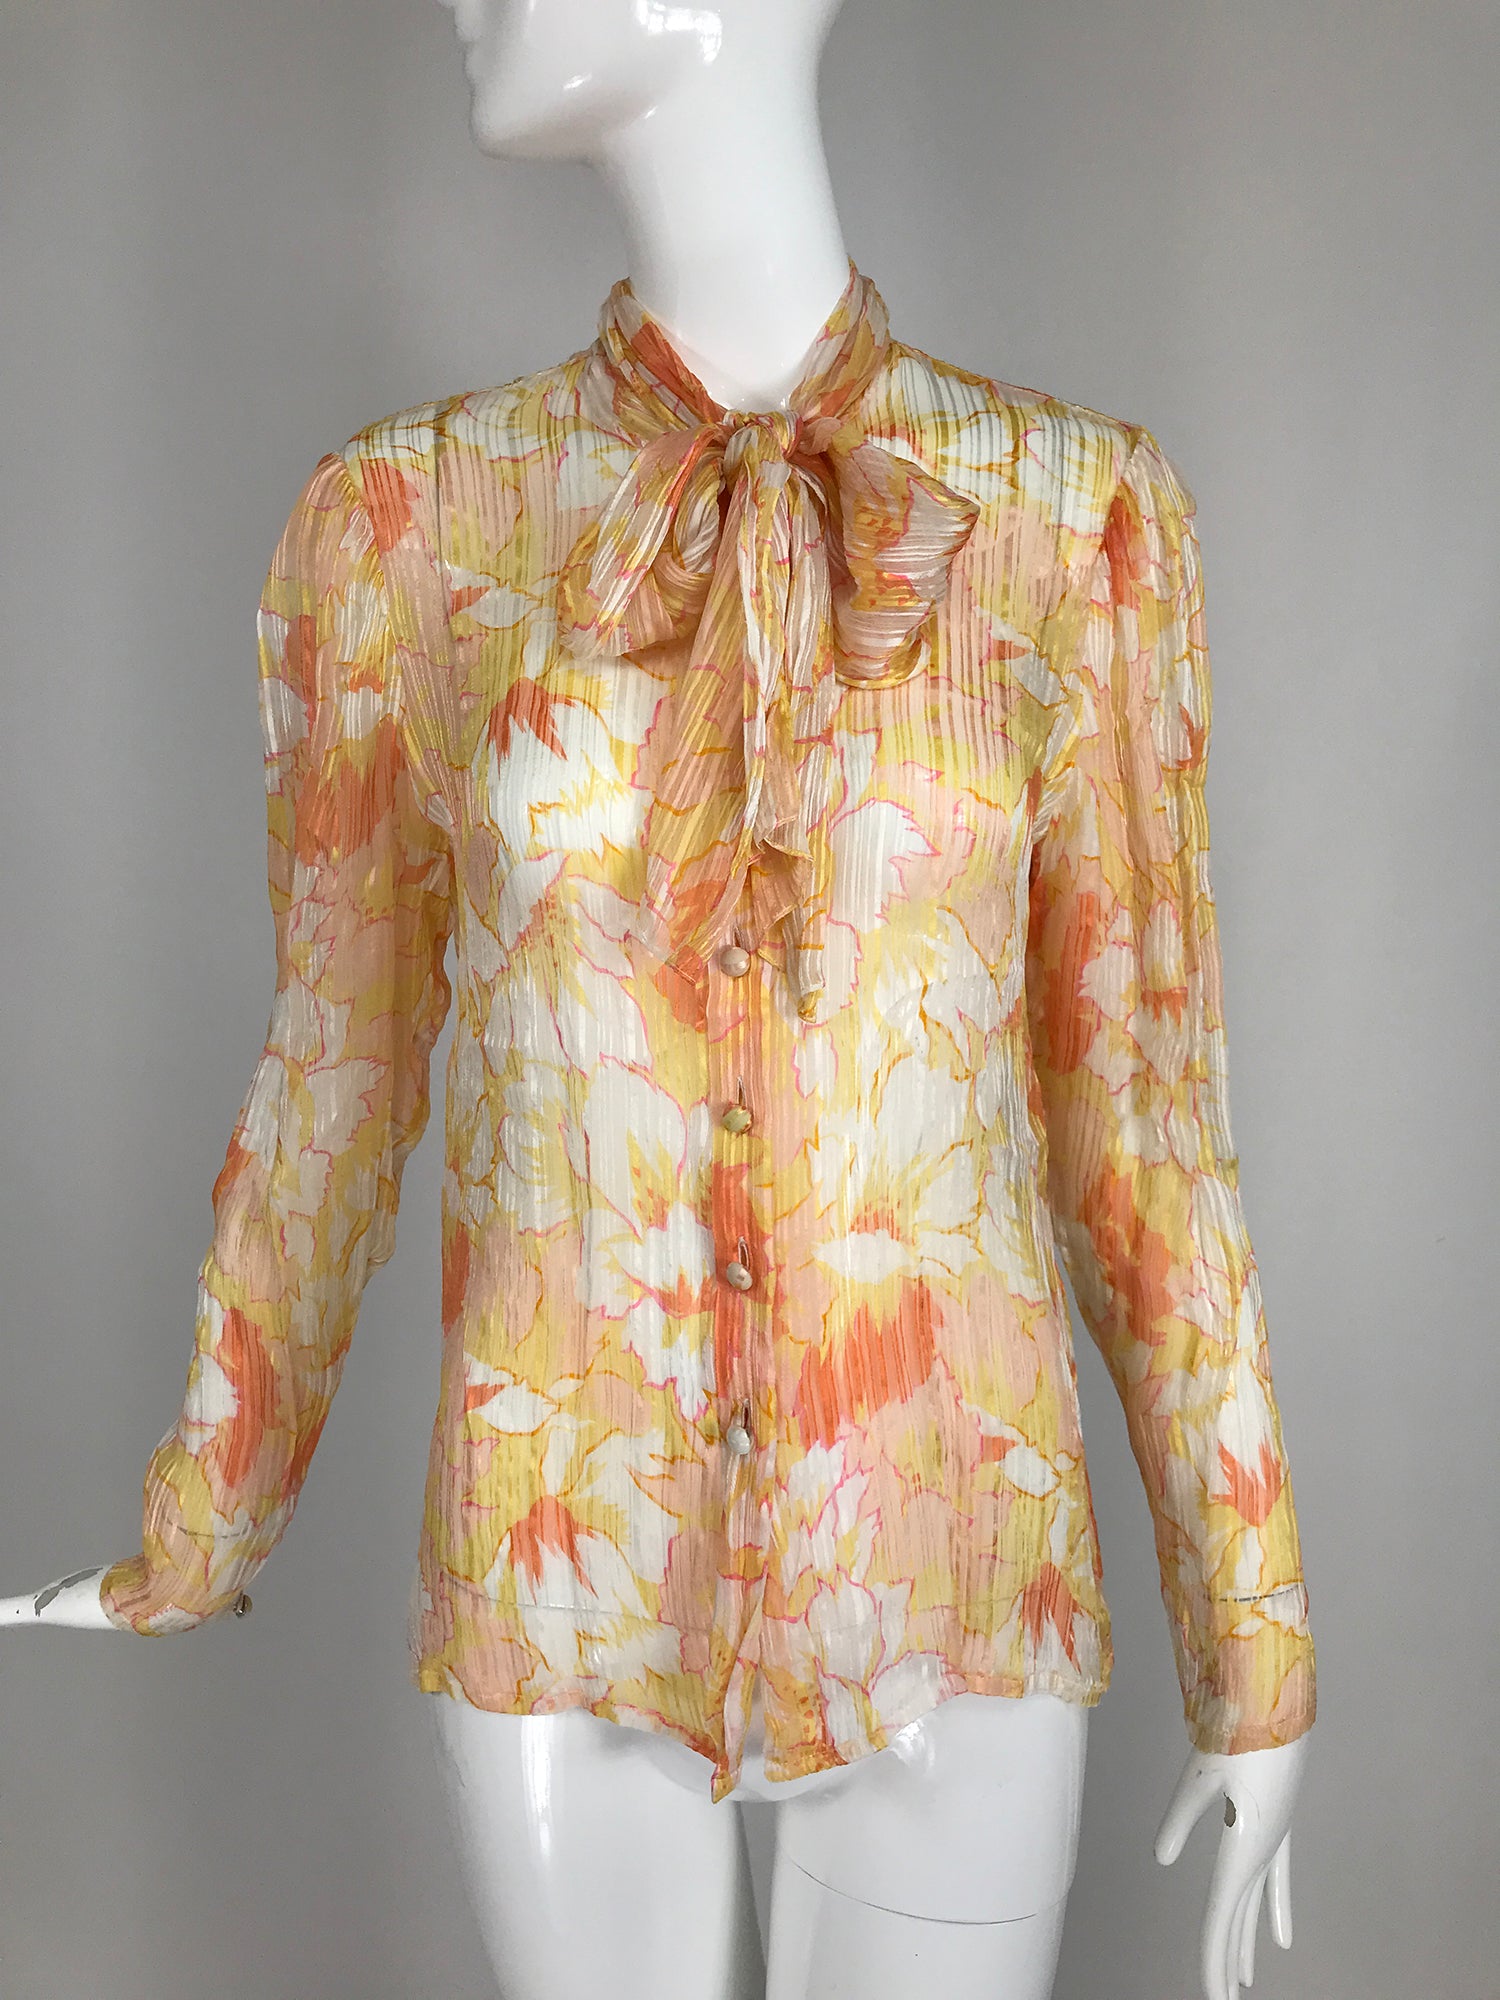 JEAN-LOUIS SCHERRER Skirt Suit Embroidered Brocade Vintage